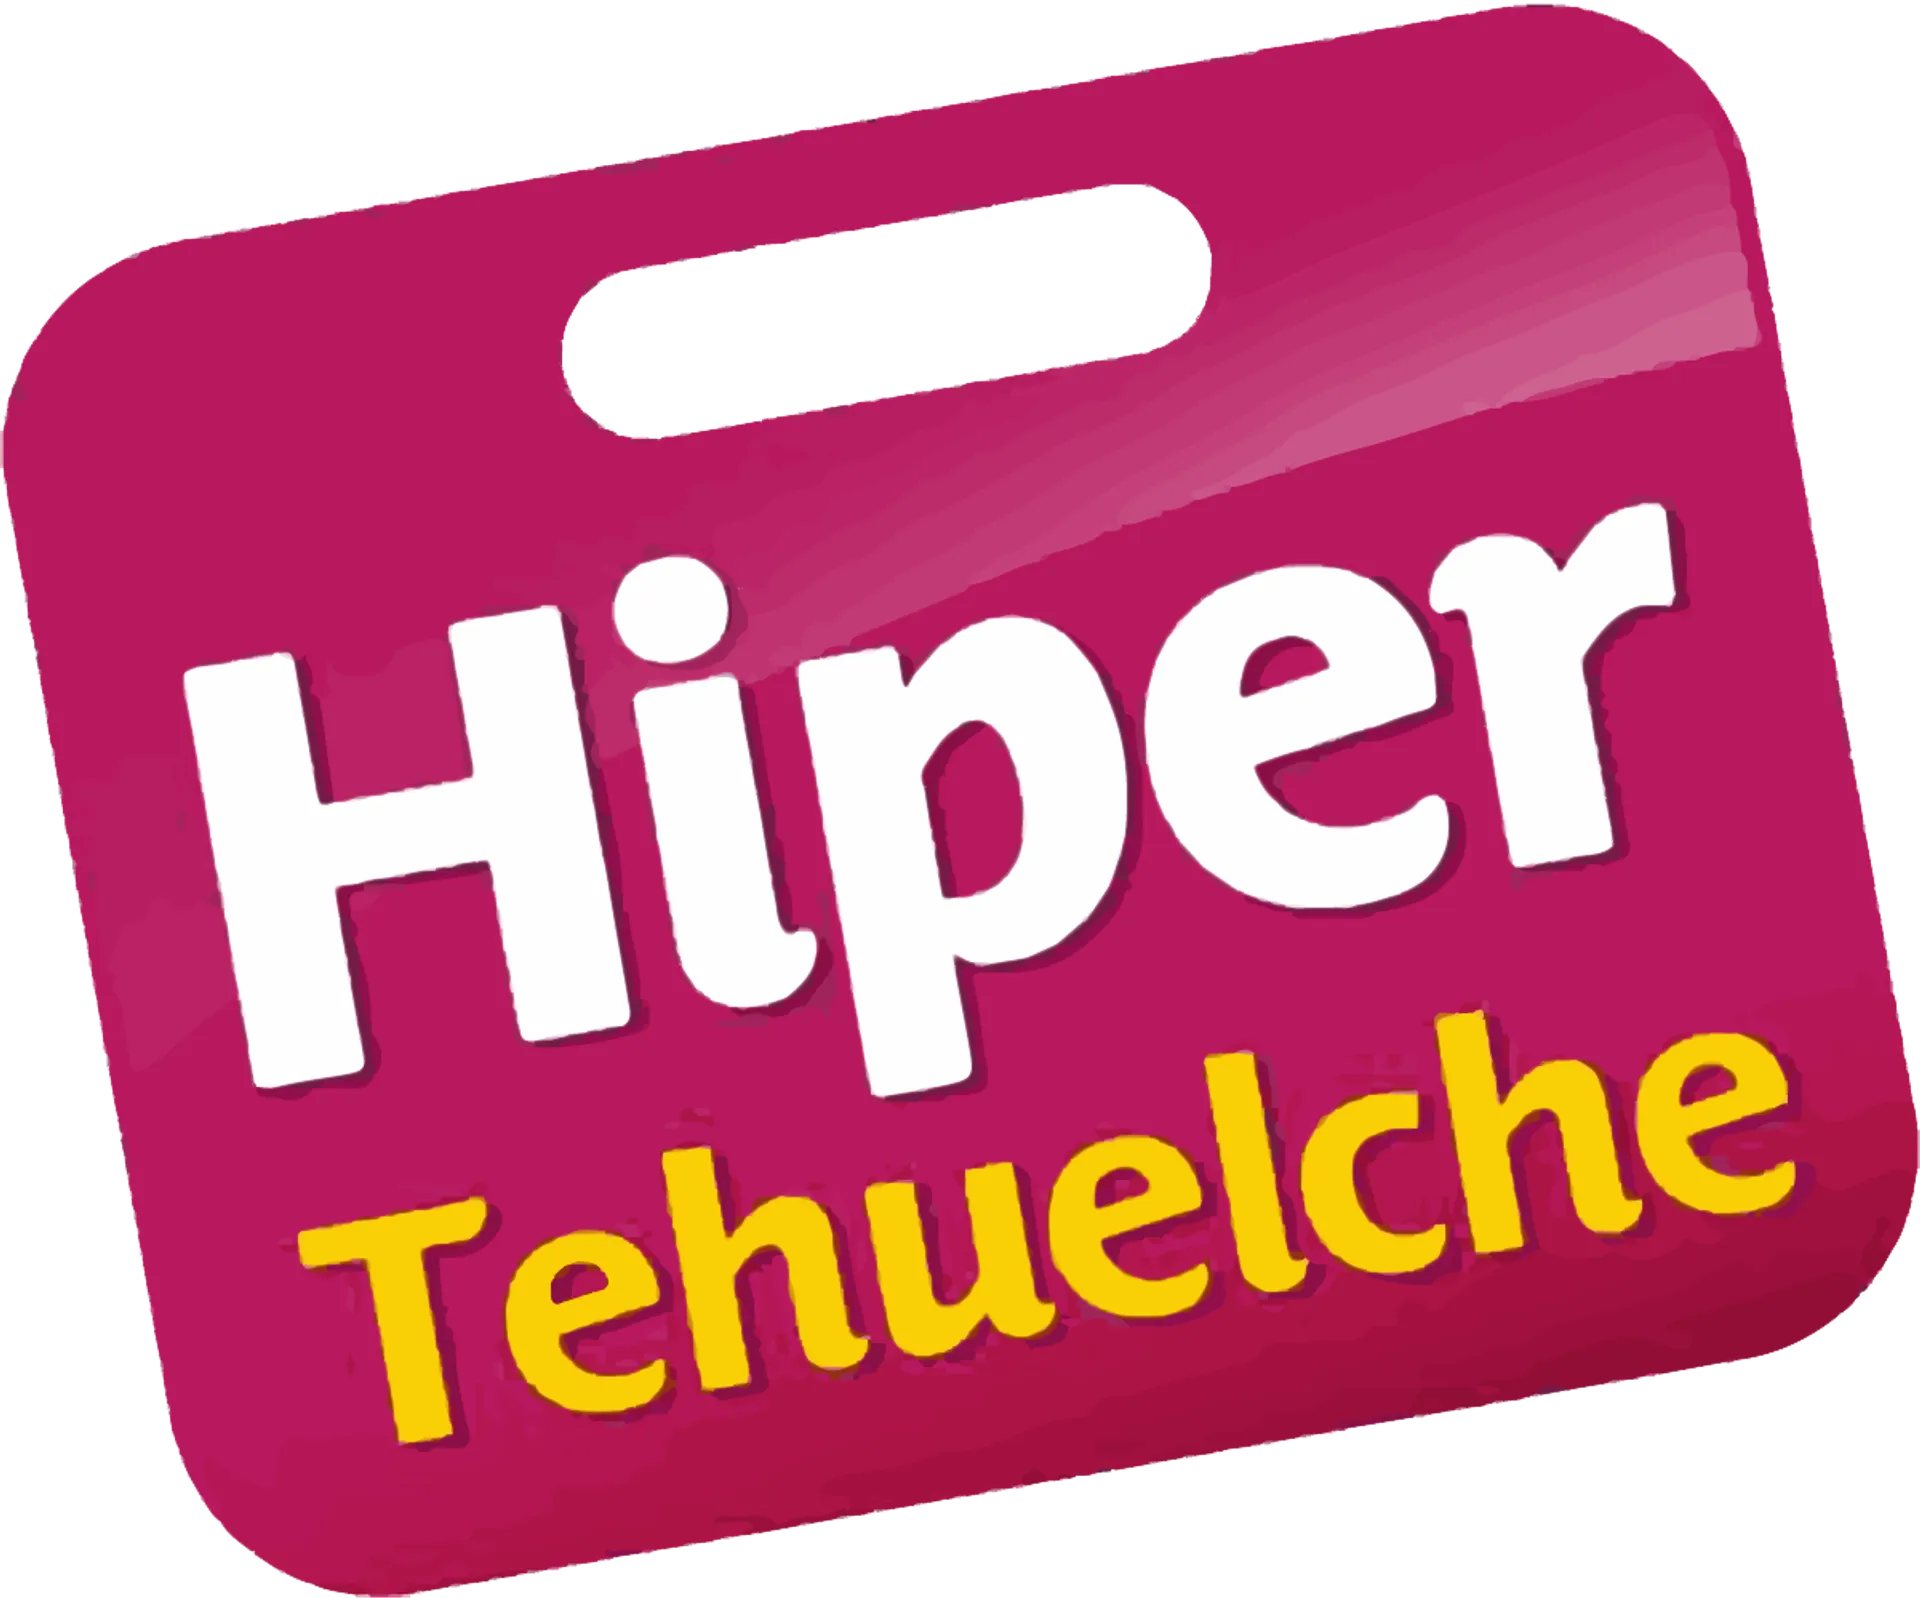 HIPER TEHUELCHE logo de catálogo